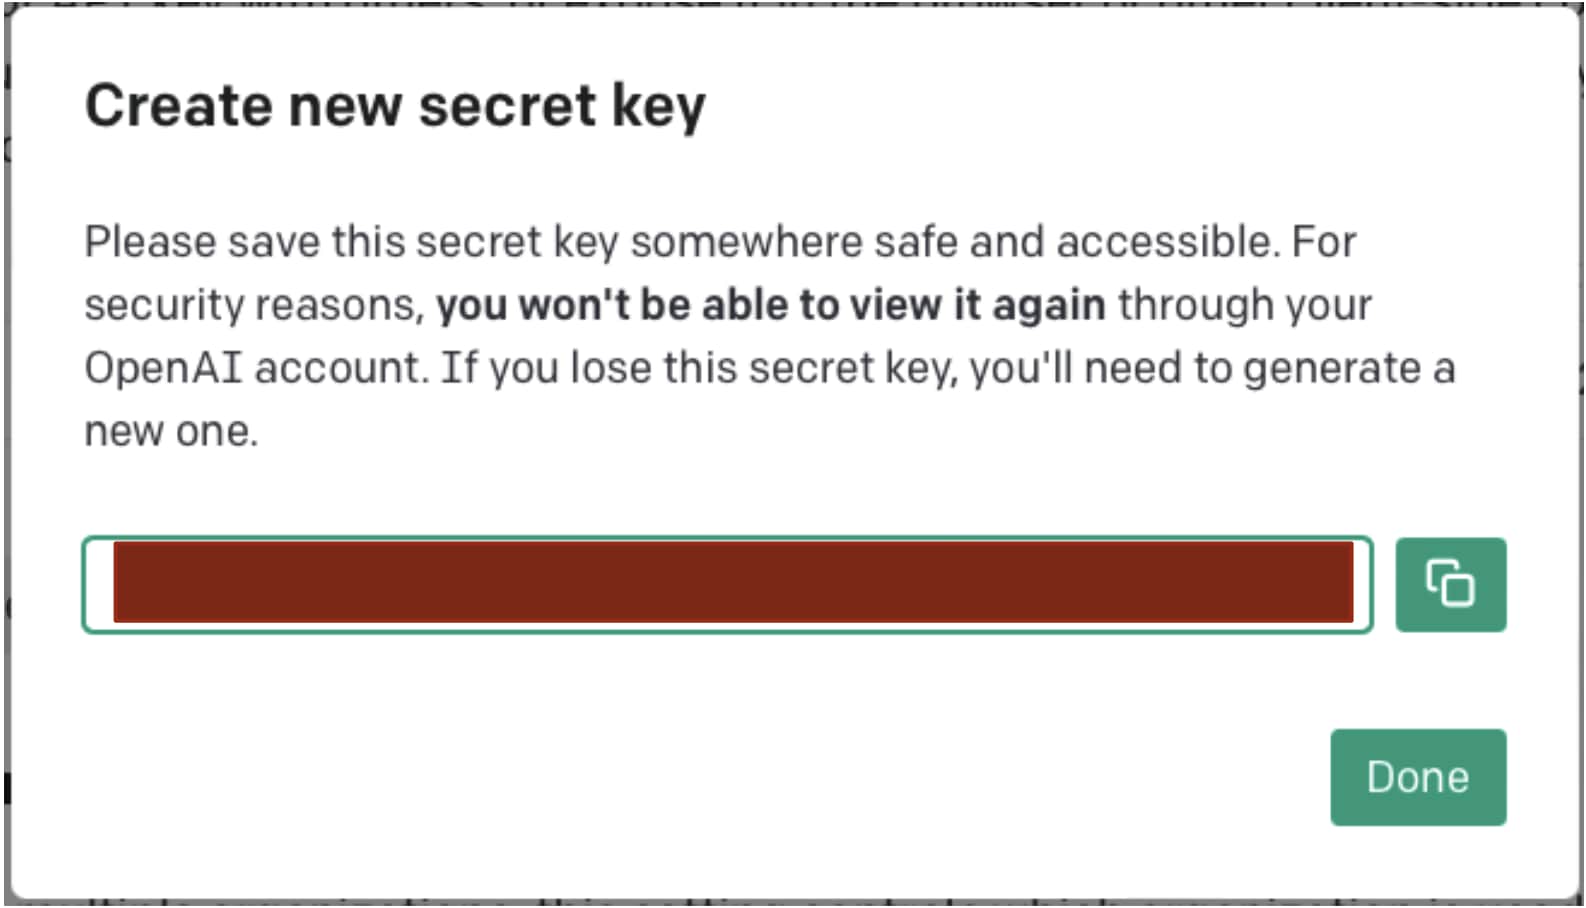 Next window to create new secret key